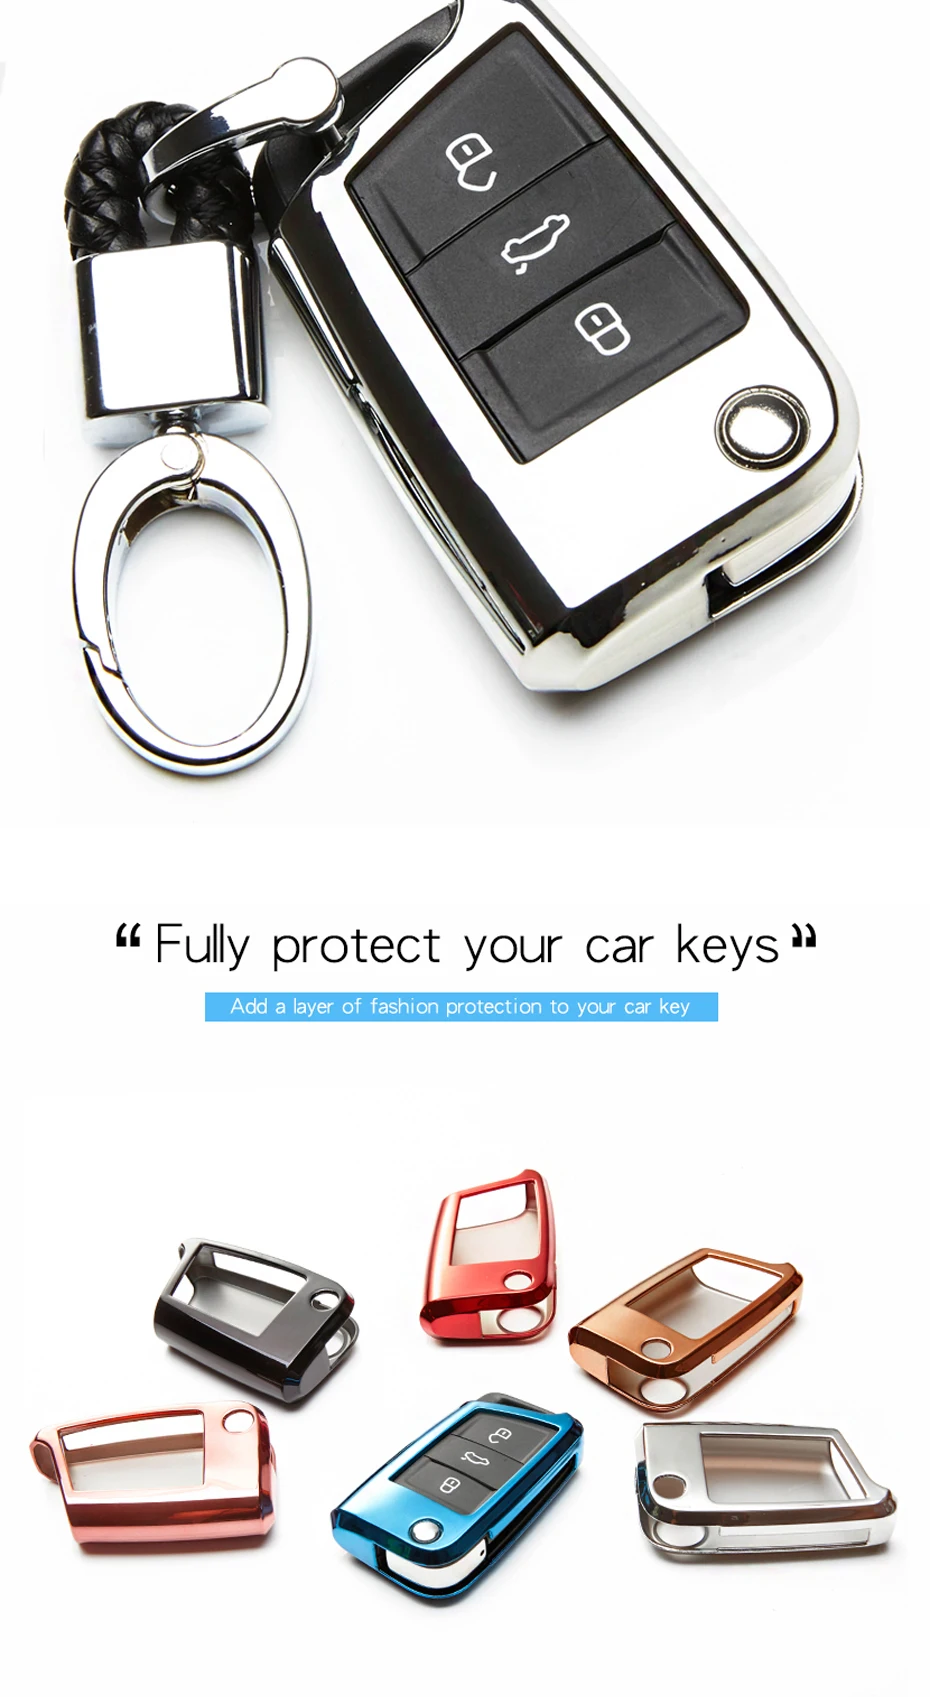 KUKAKEY ТПУ чехол для ключей для Skoda Octavia combi превосходные A7 дистанционный ключ для автомобиля в виде ракушки сумка защиты стайлинга автомобилей авто аксессуары